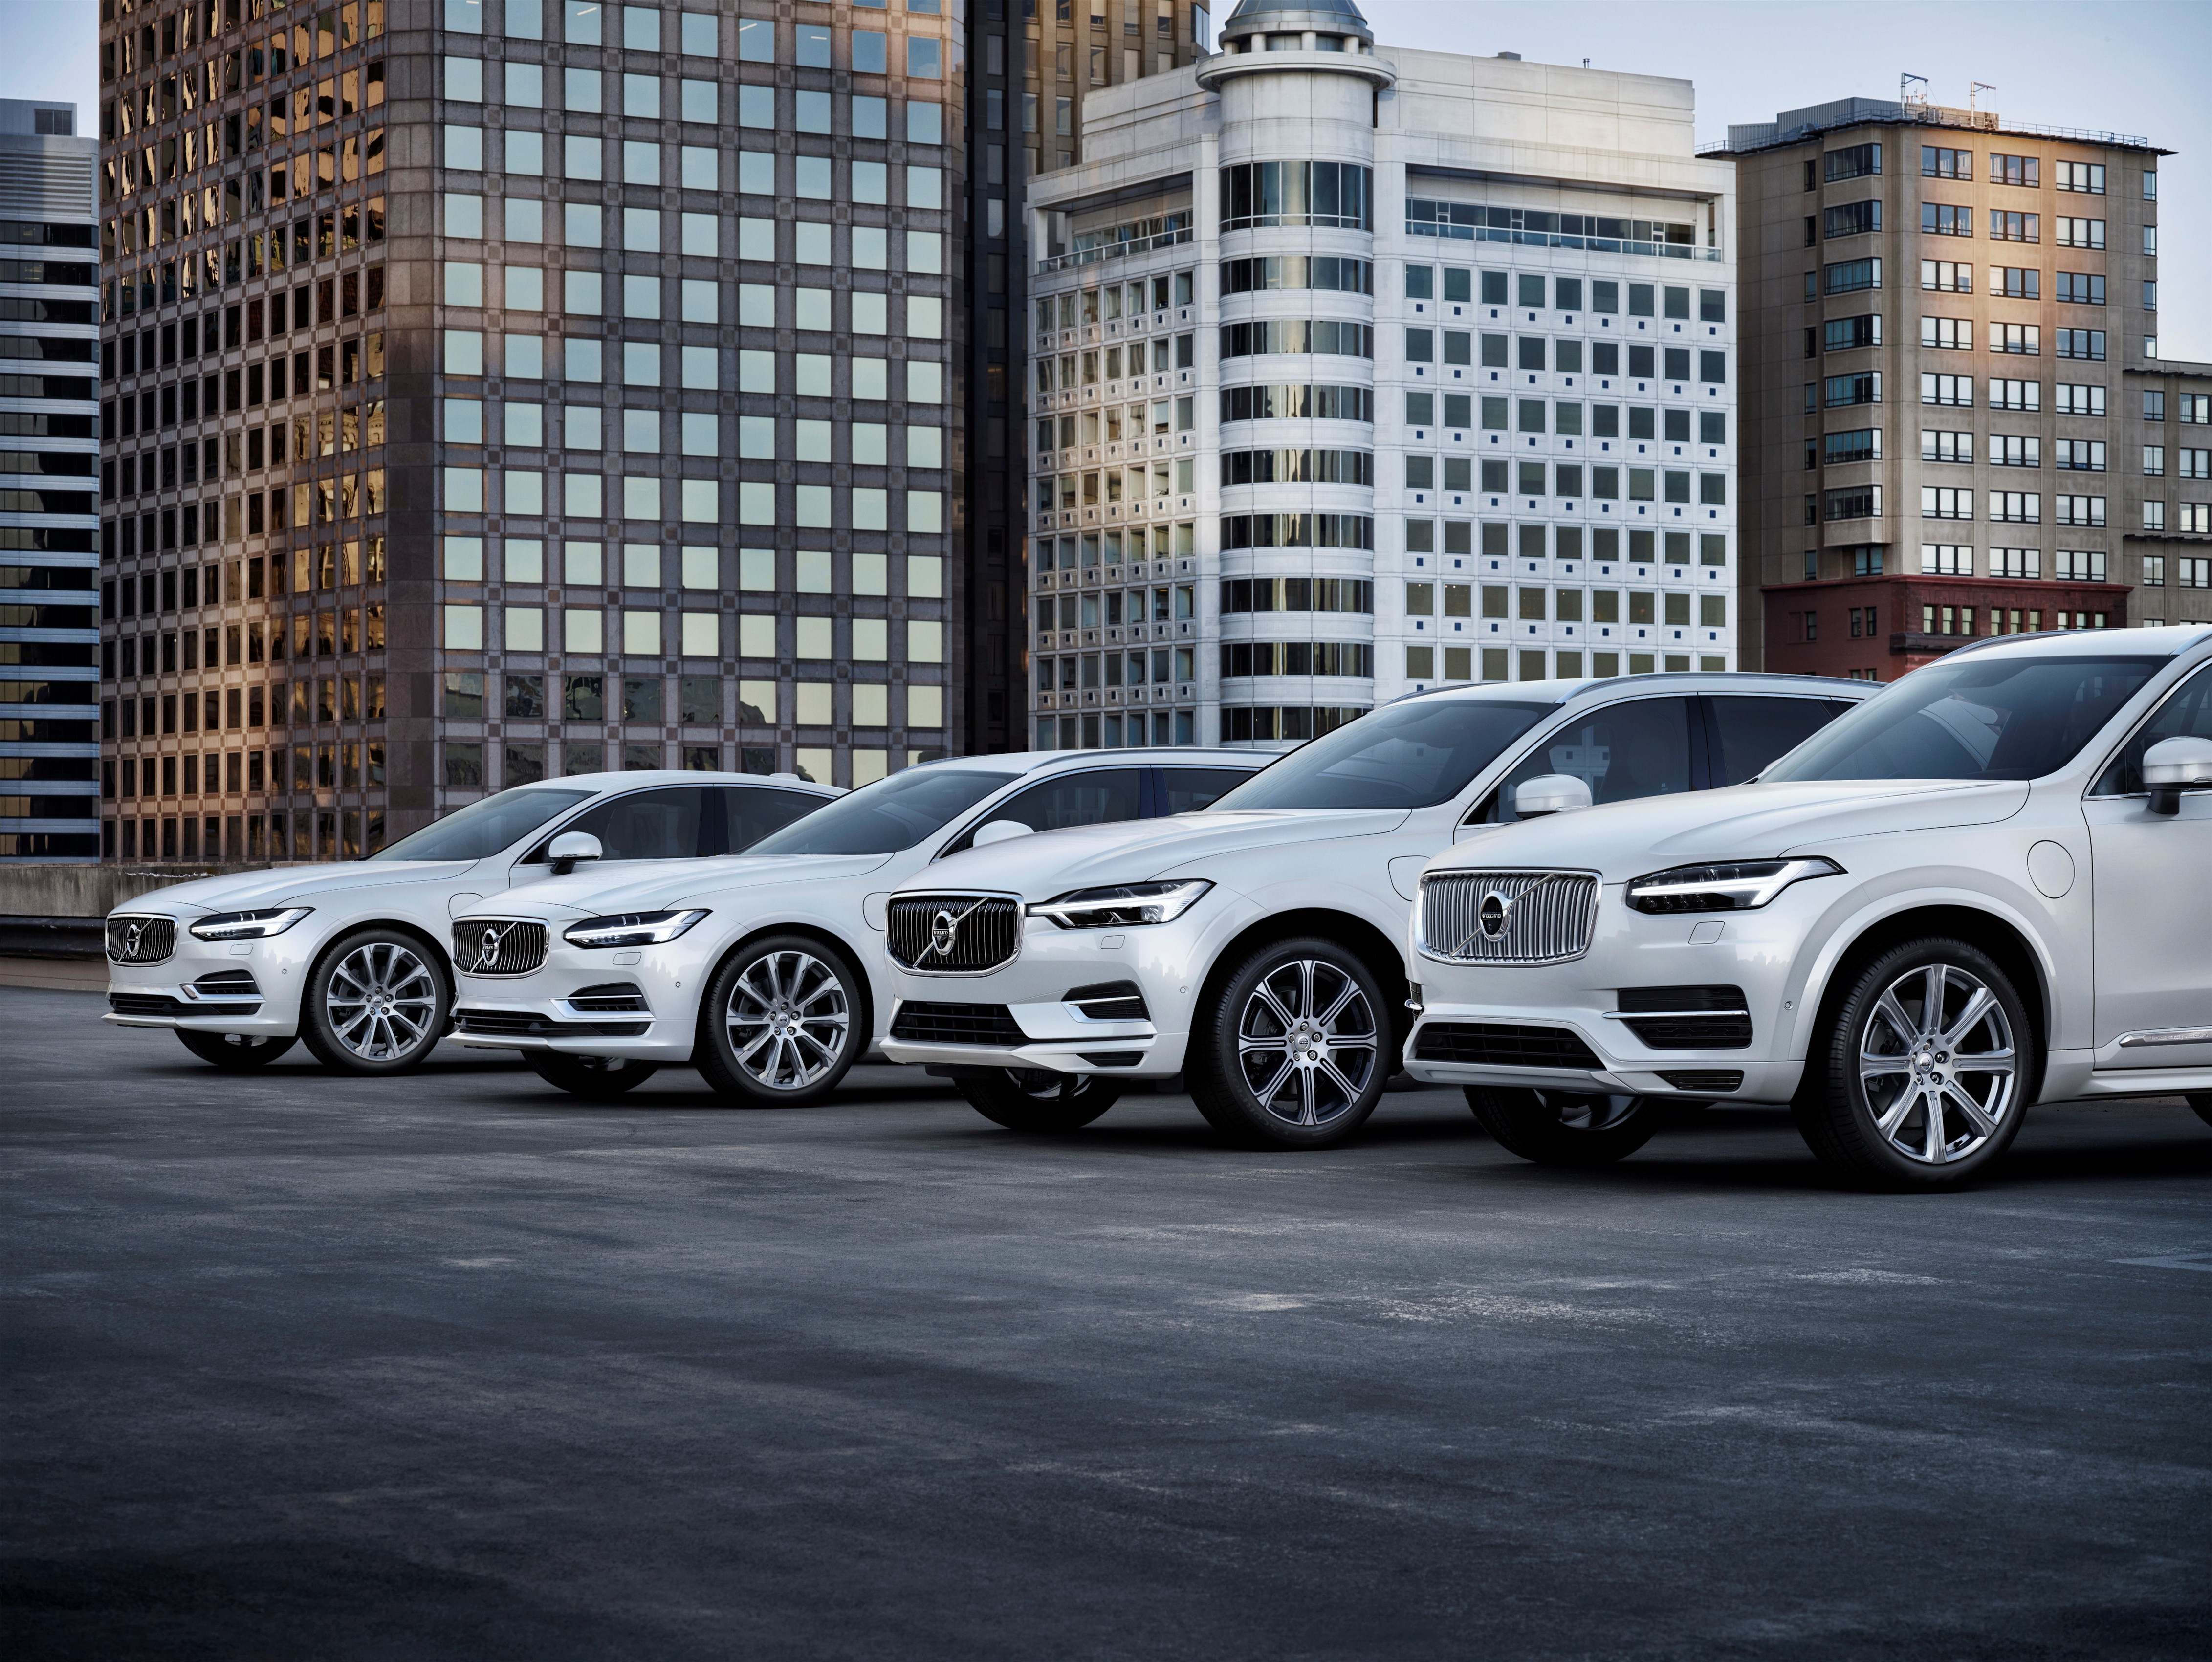 Η Volvo cars παρουσίασε αύξηση πωλήσεων 12,4% τον Μάιο